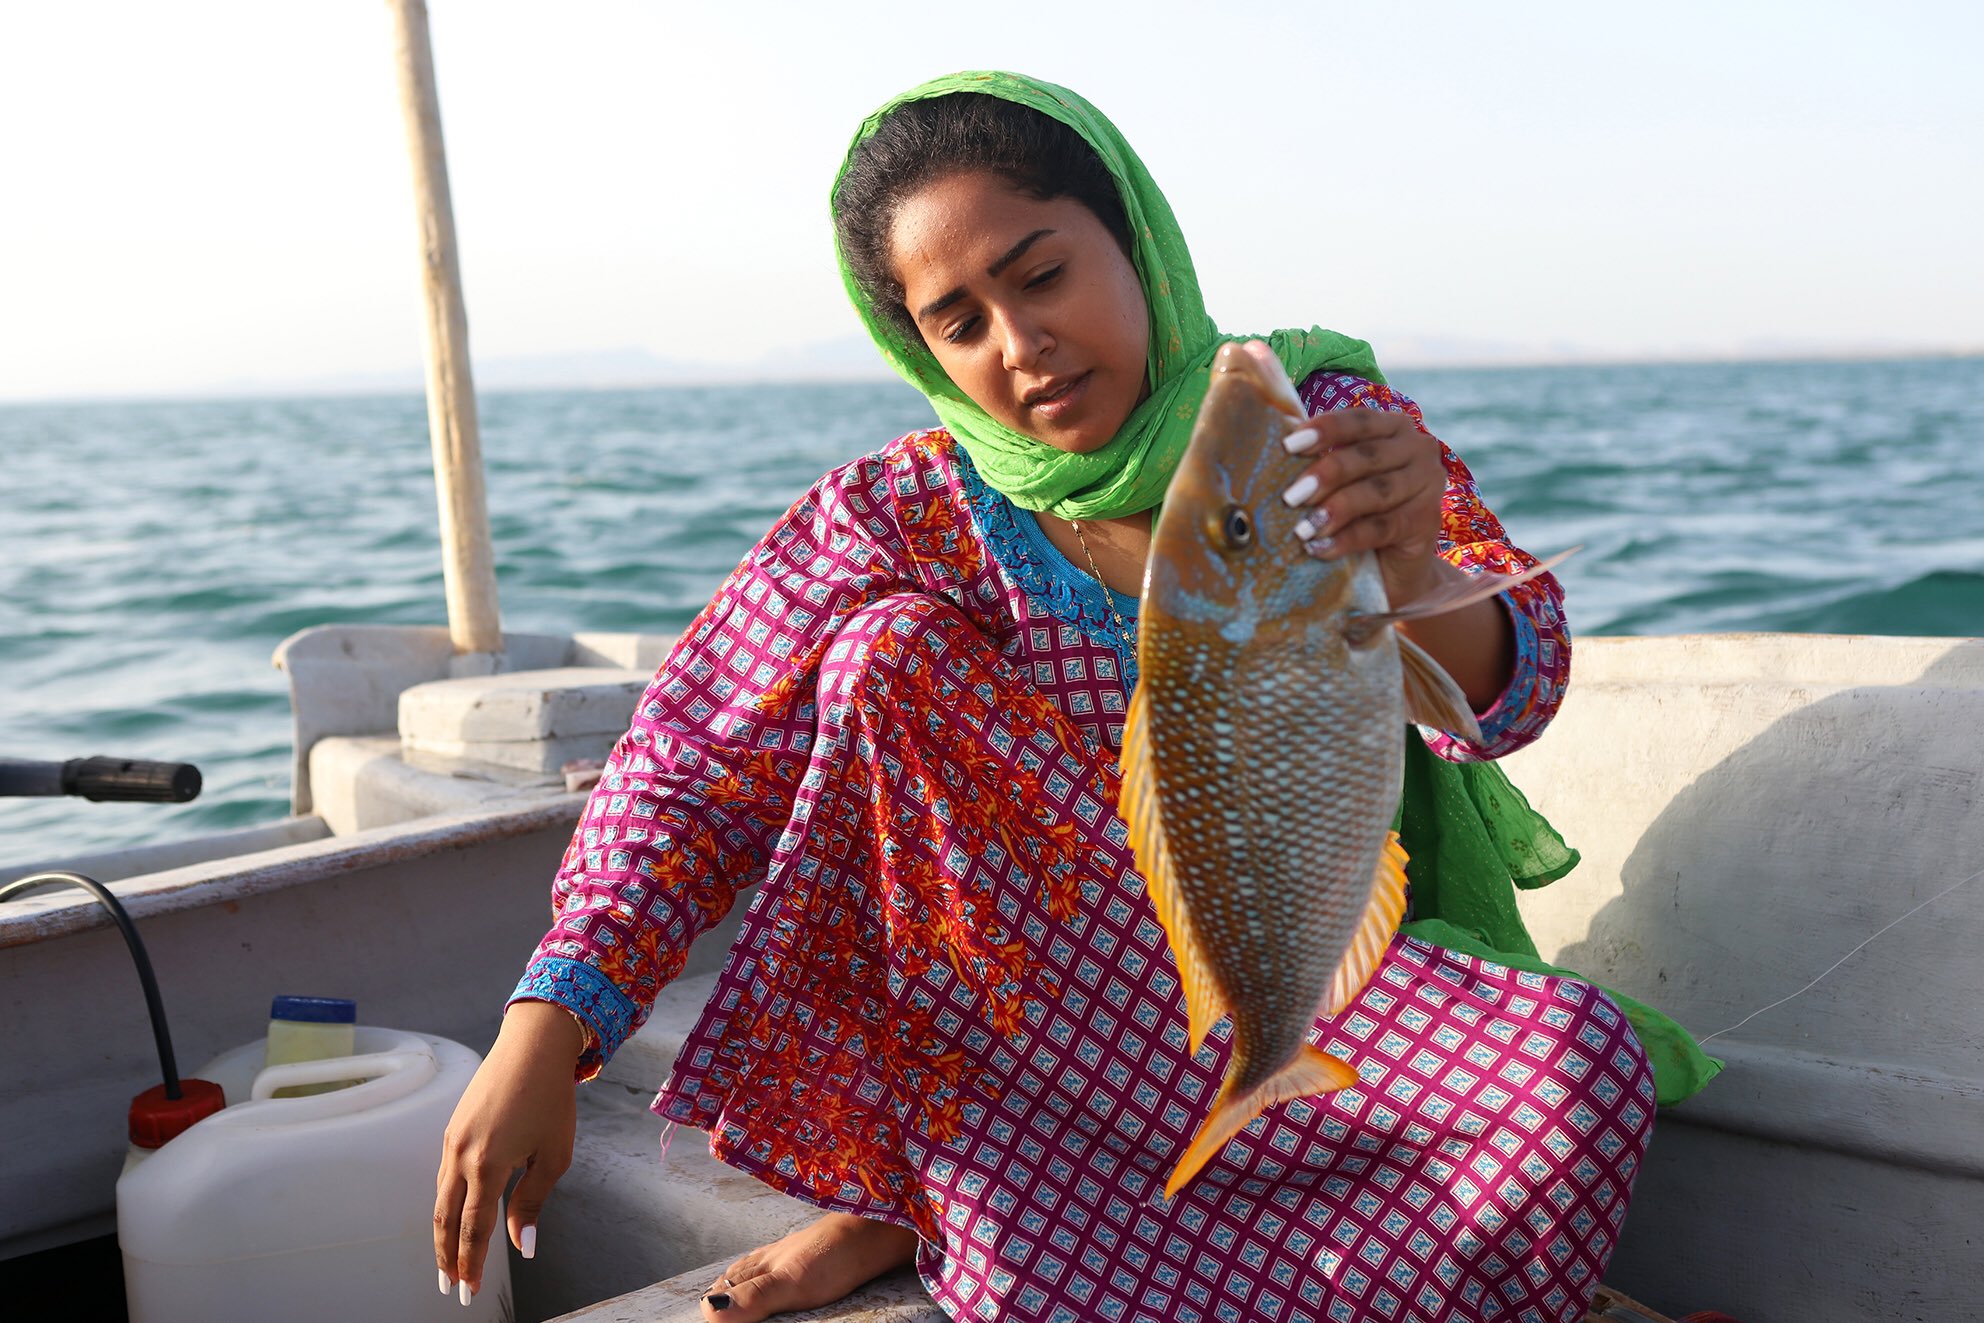 Hengam island women fishing bandari life